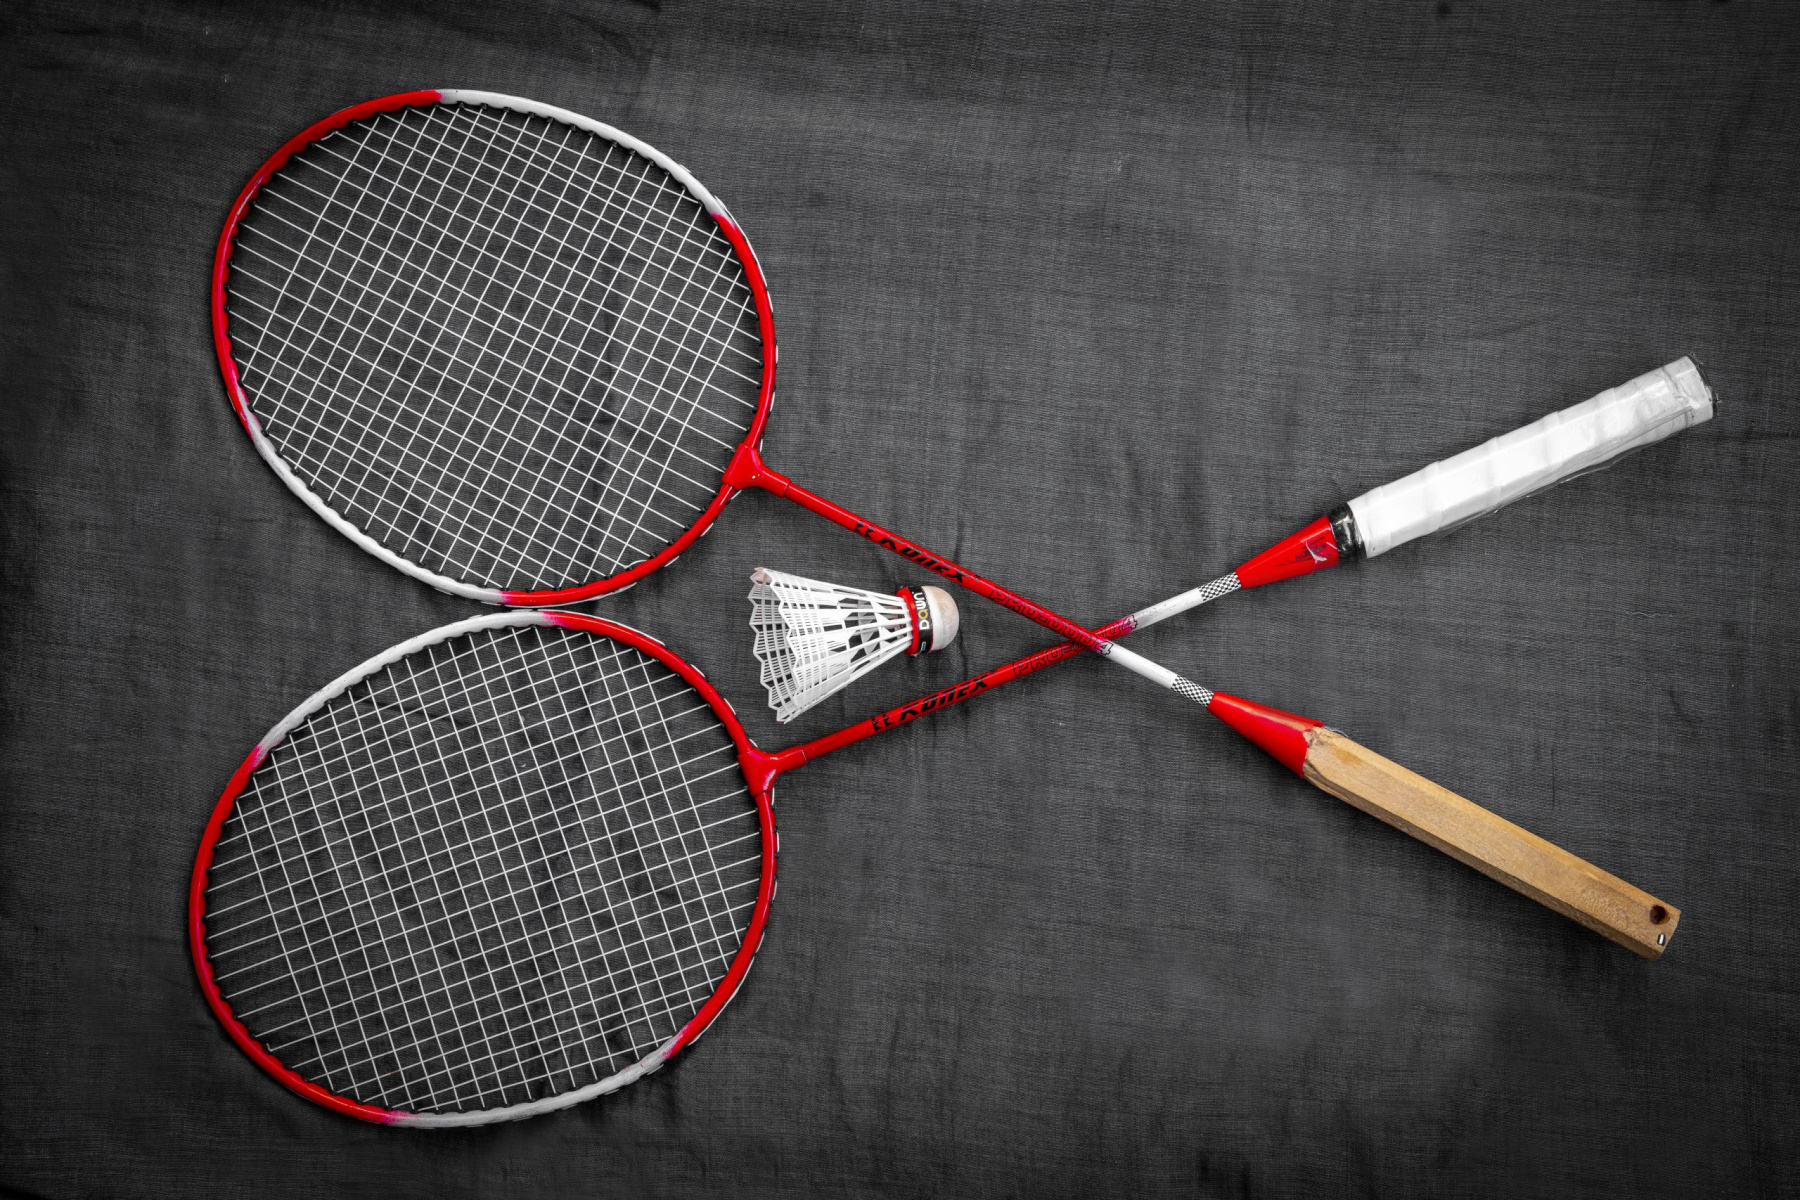 Saiba quais são os 6 principais torneios de badminton no mundo